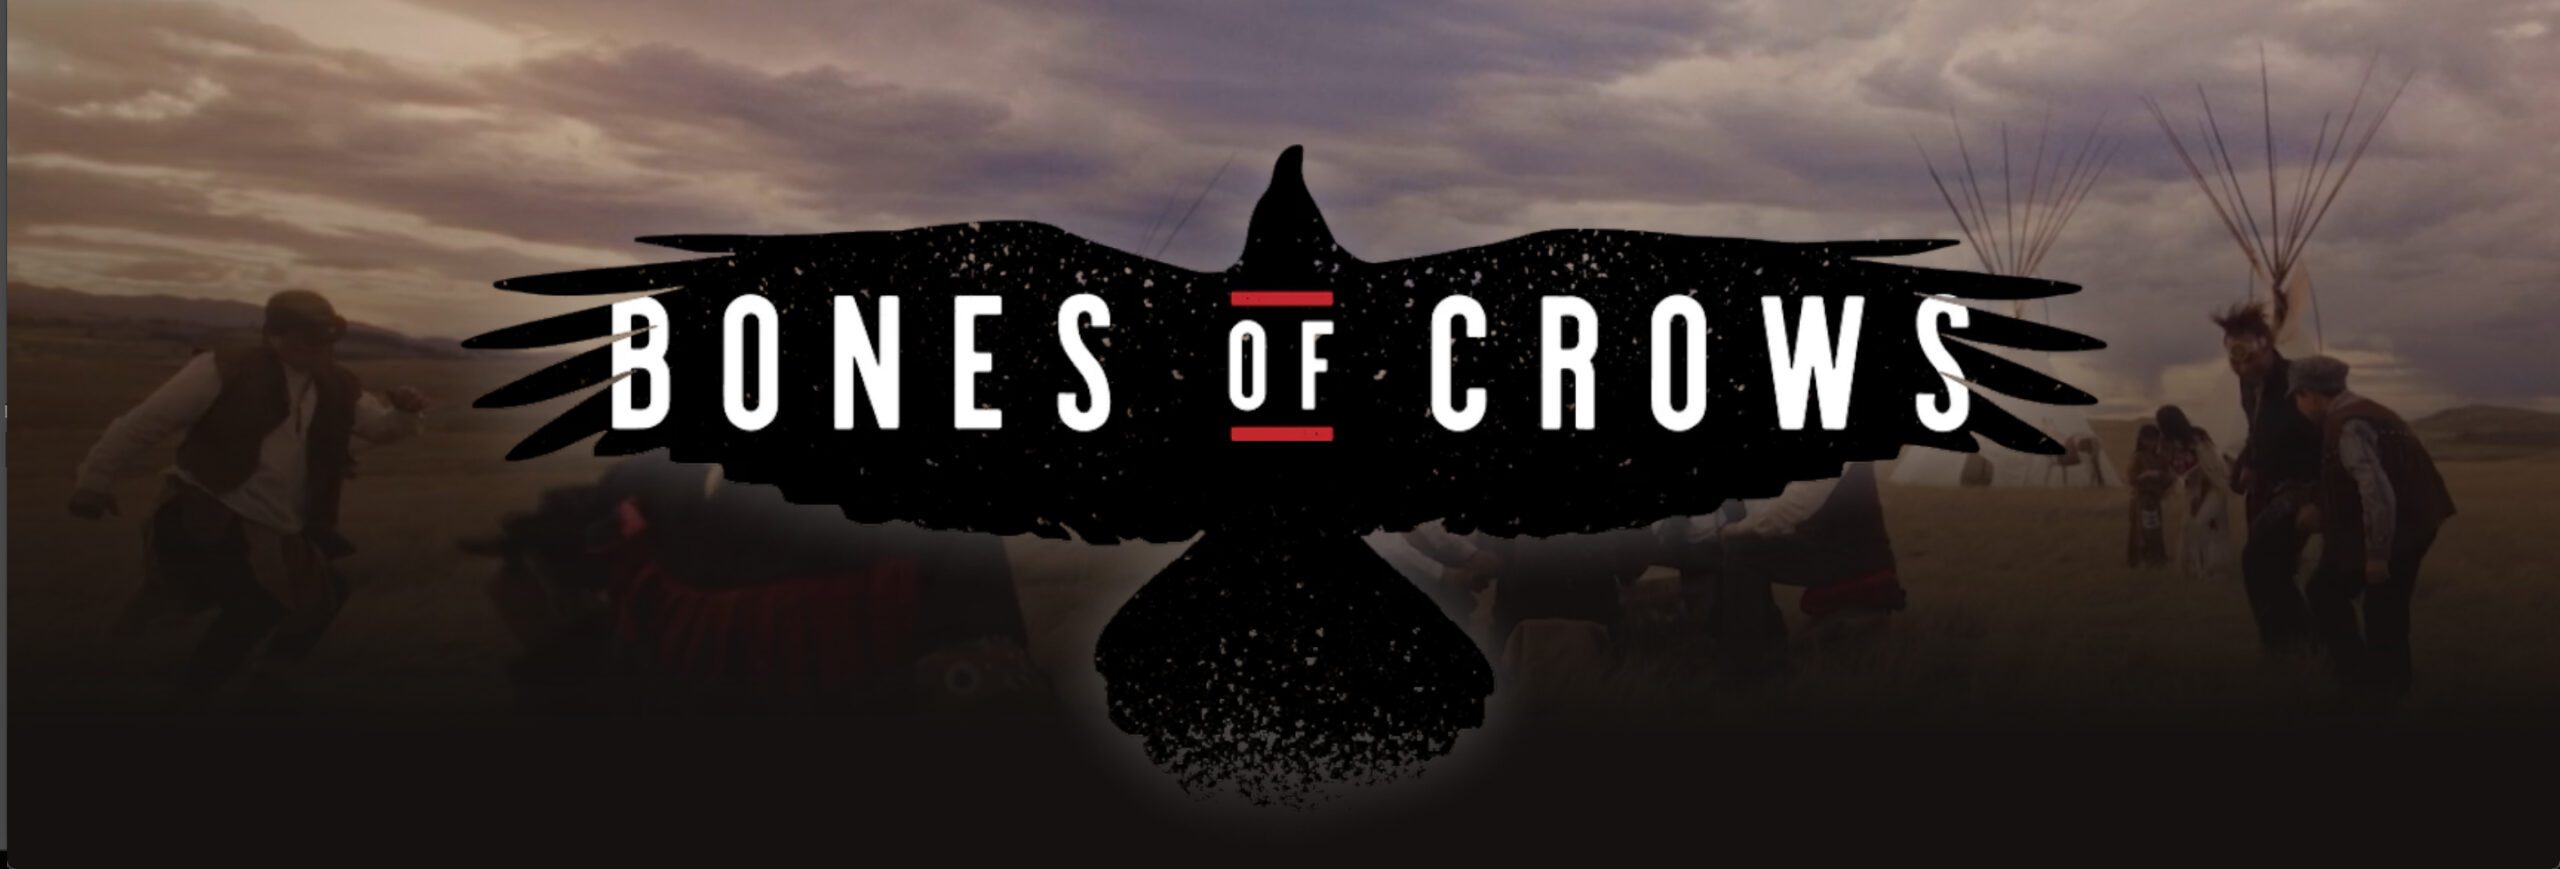 Bones of Crows the Series